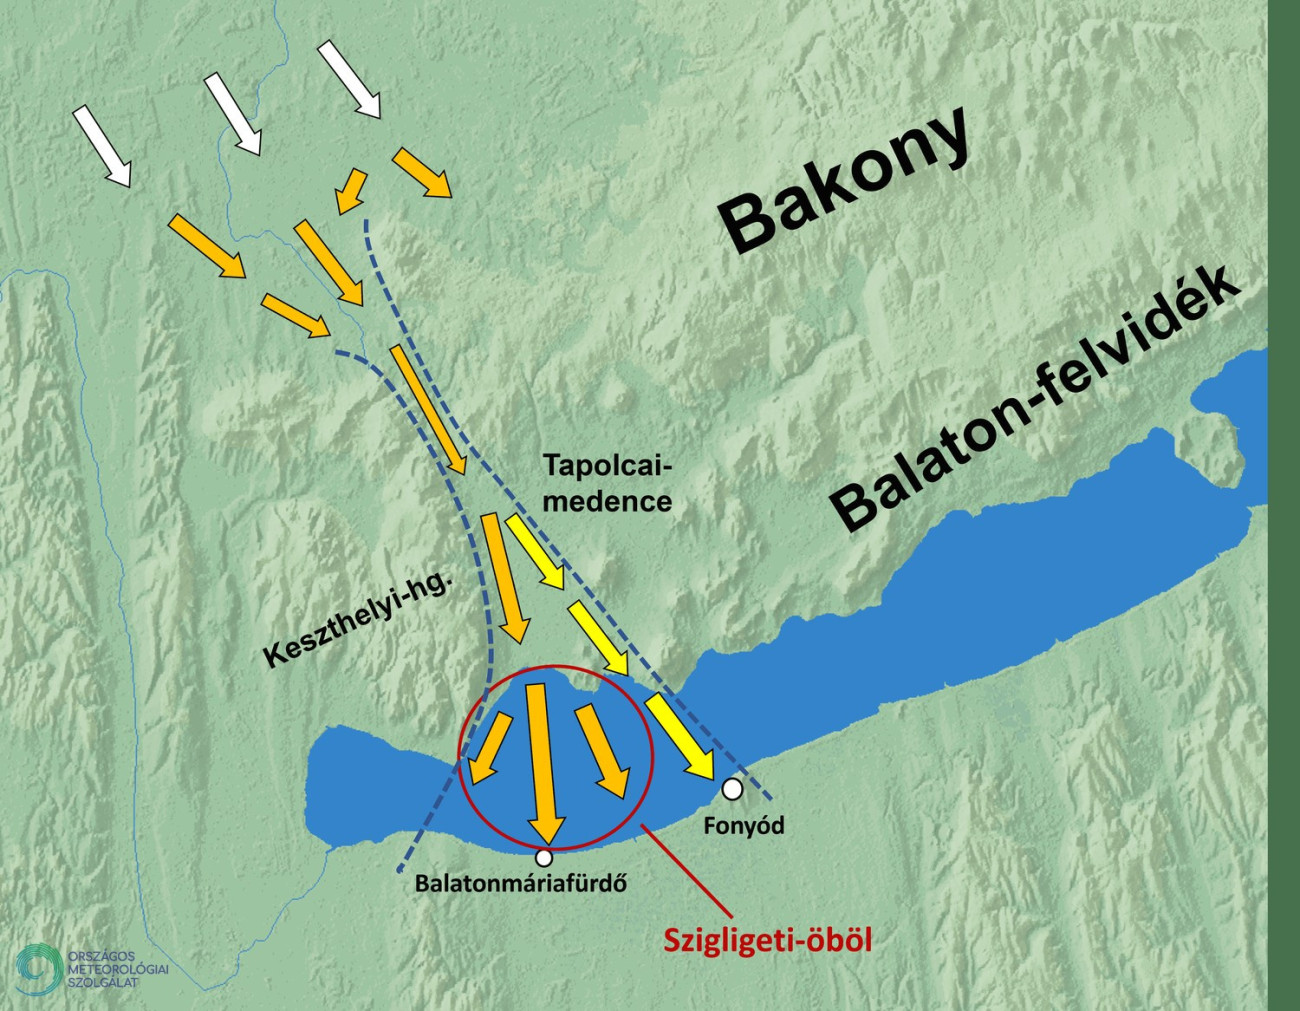 A Balatontól északra húzódó domborzat egyik jellegzetes áramlásmódosító hatása a Szigligeti-öbölben jelentkezik. Nyári éjszakákon gyakori, hogy a Keszthelyi-hegység és a Bakony közötti szélcsatornában felgyorsul a szél, a meleg víz felett pedig le is keveredik a felszín közelébe. Ilyenkor az egész országban egyedül itt fúj erős szél.